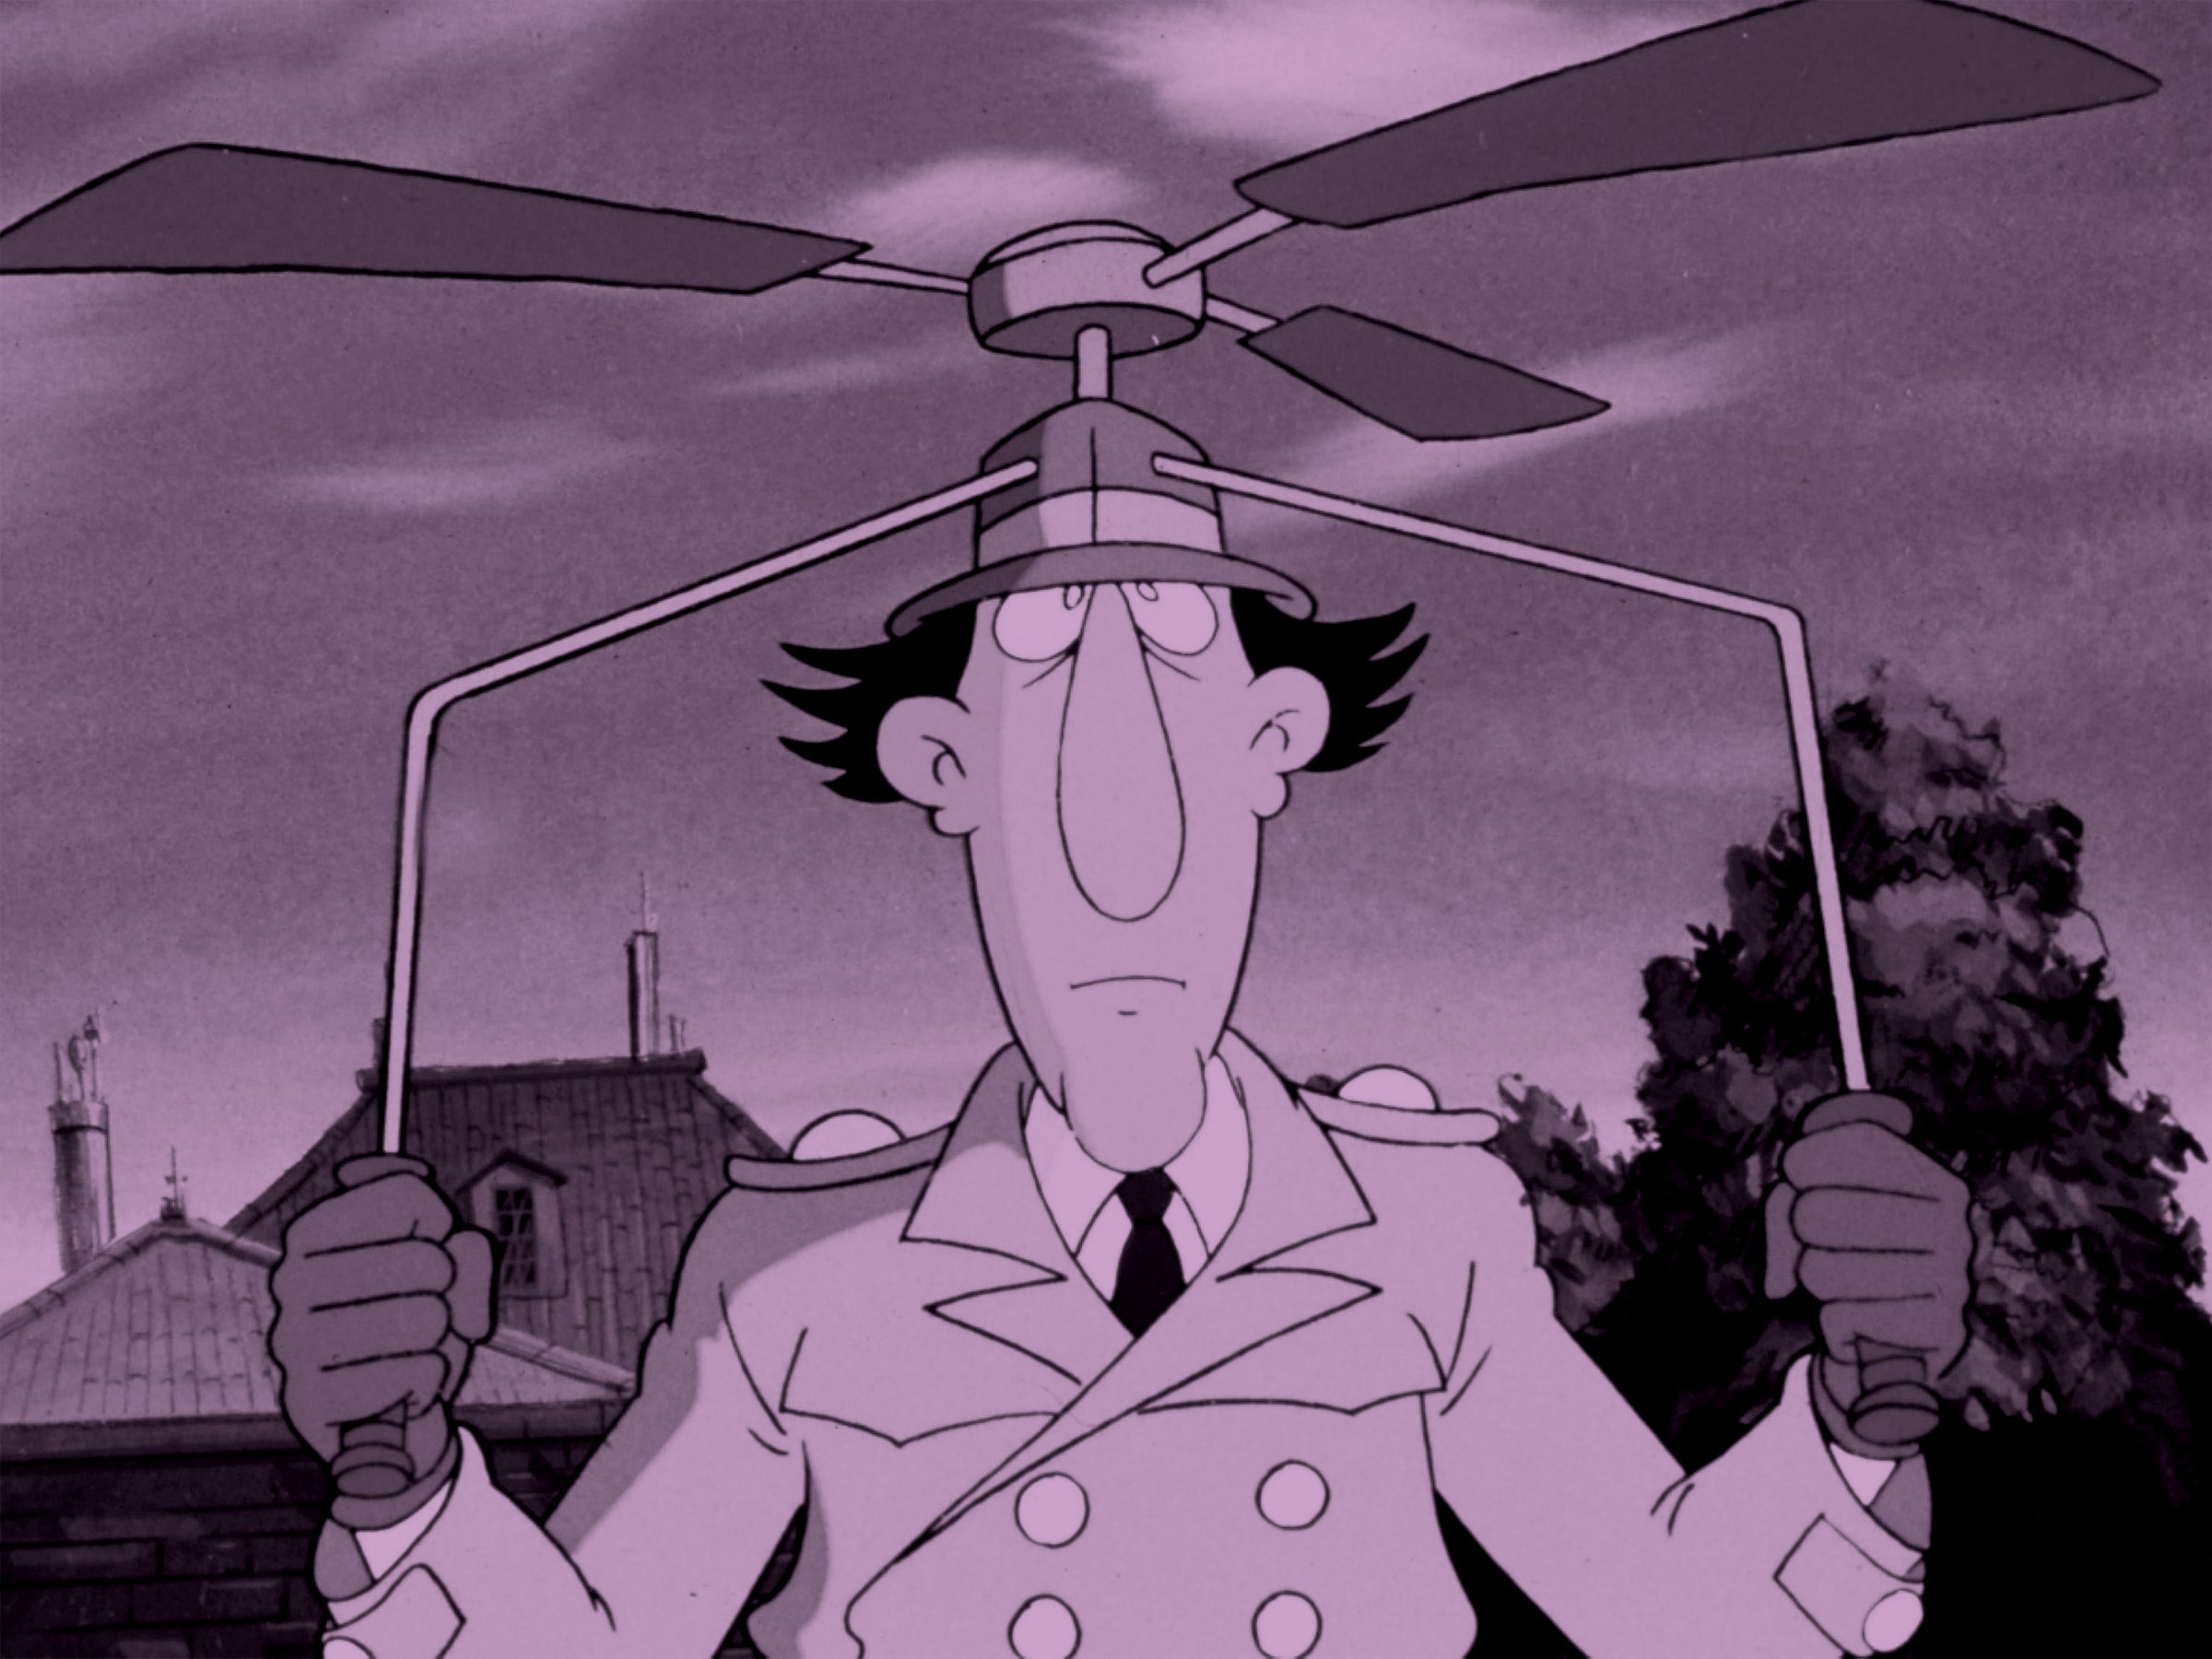 O gadget do inspetor em um chapéu de helicóptero